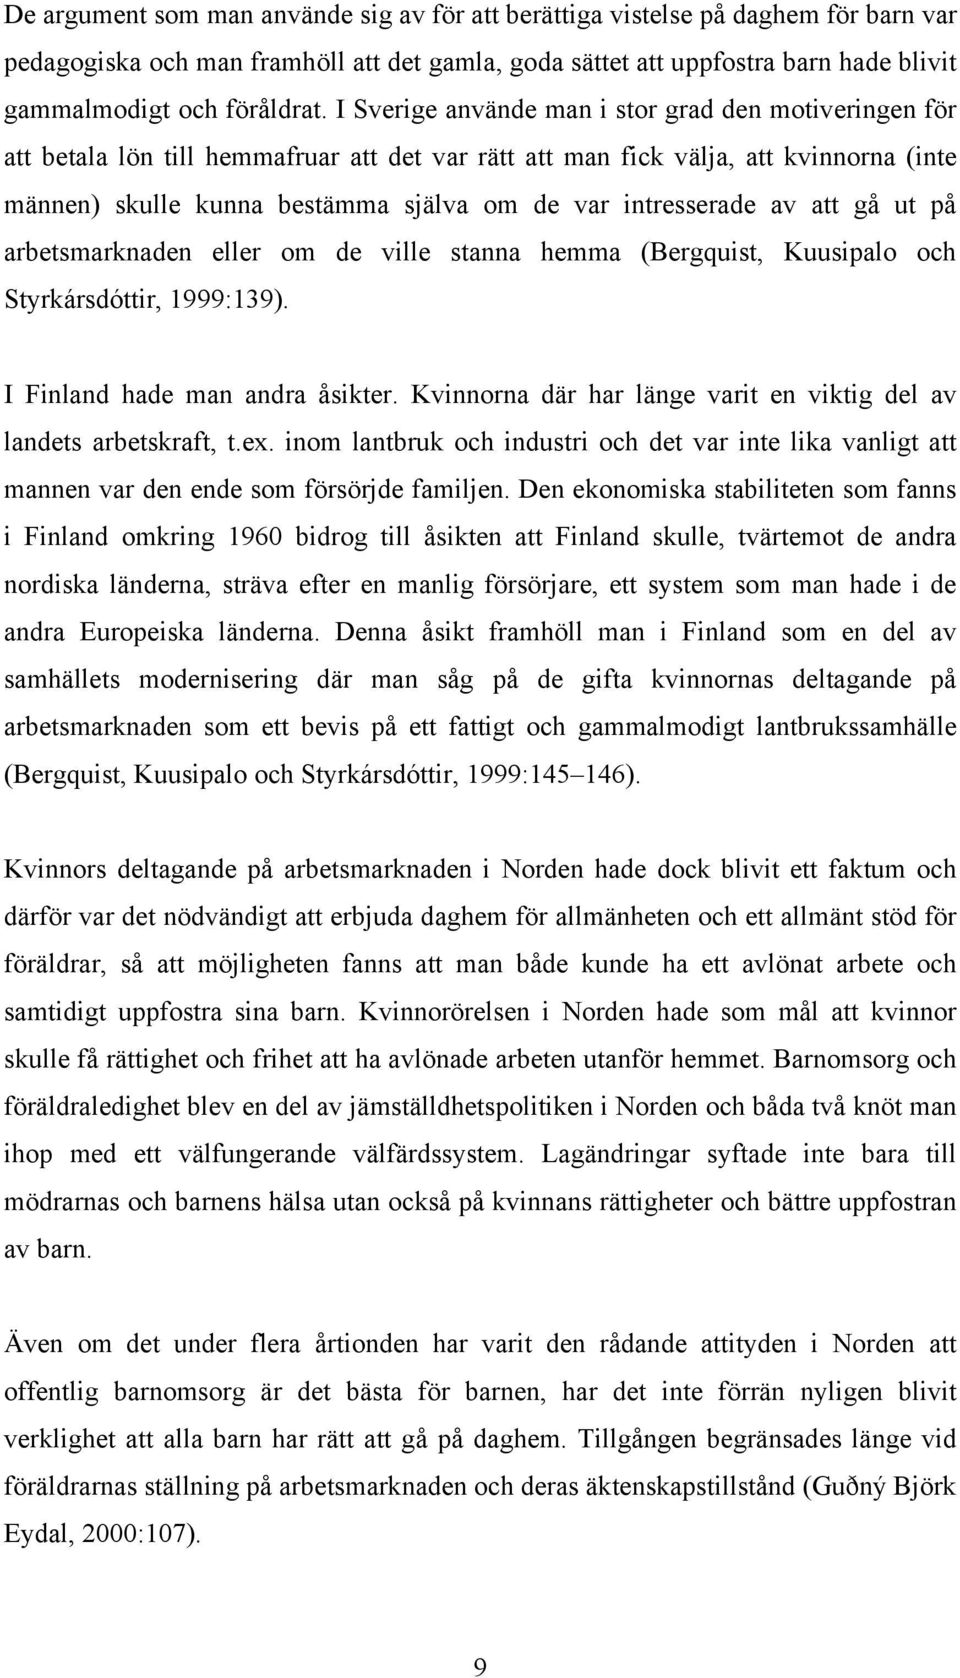 intresserade av att gå ut på arbetsmarknaden eller om de ville stanna hemma (Bergquist, Kuusipalo och Styrkársdóttir, 1999:139). I Finland hade man andra åsikter.